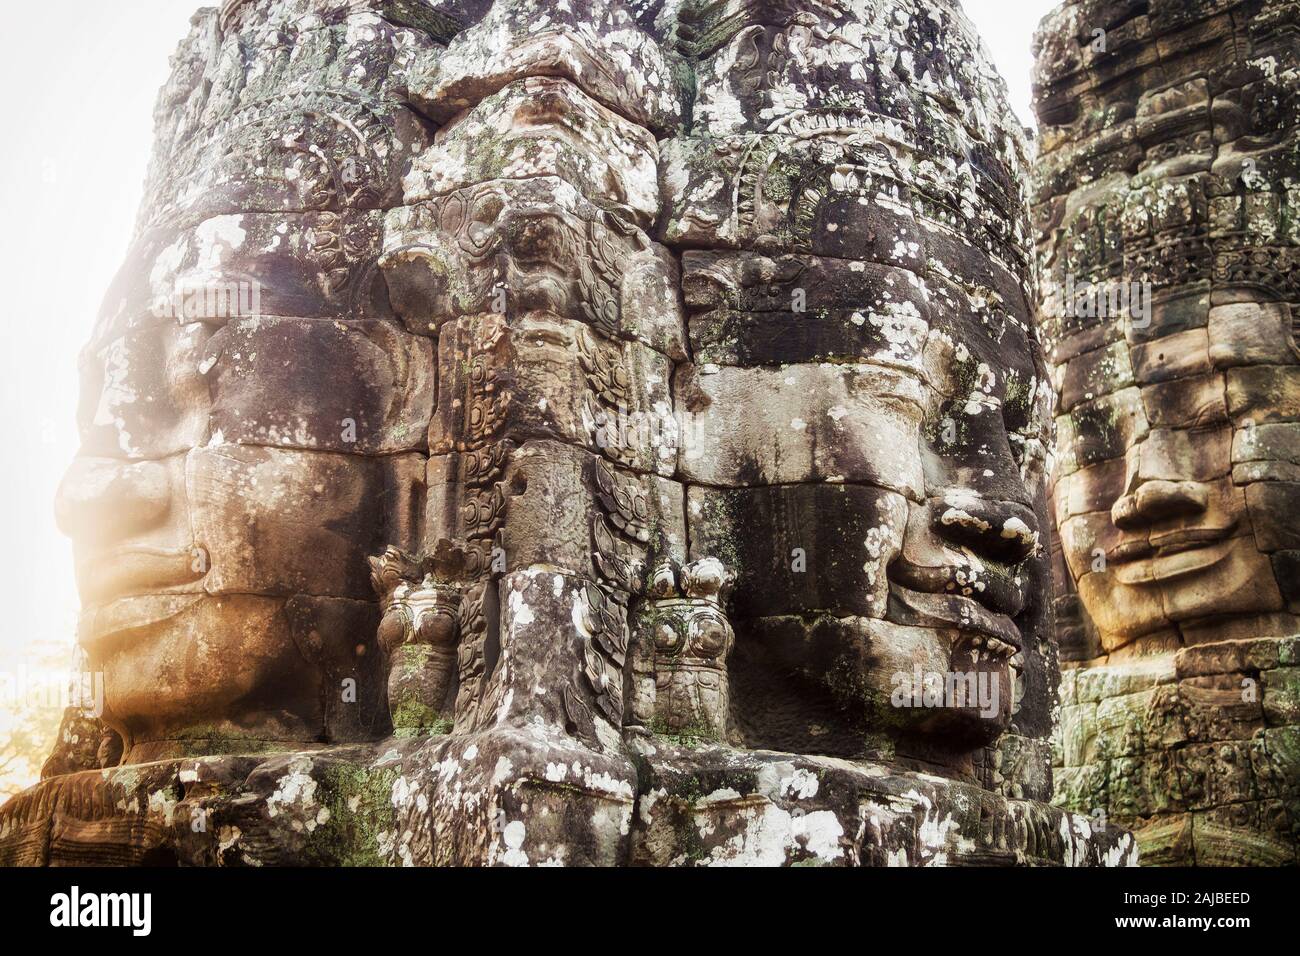 Visages de pierre au temple Bayon, Angkor, Siem Reap, Cambodge. Banque D'Images